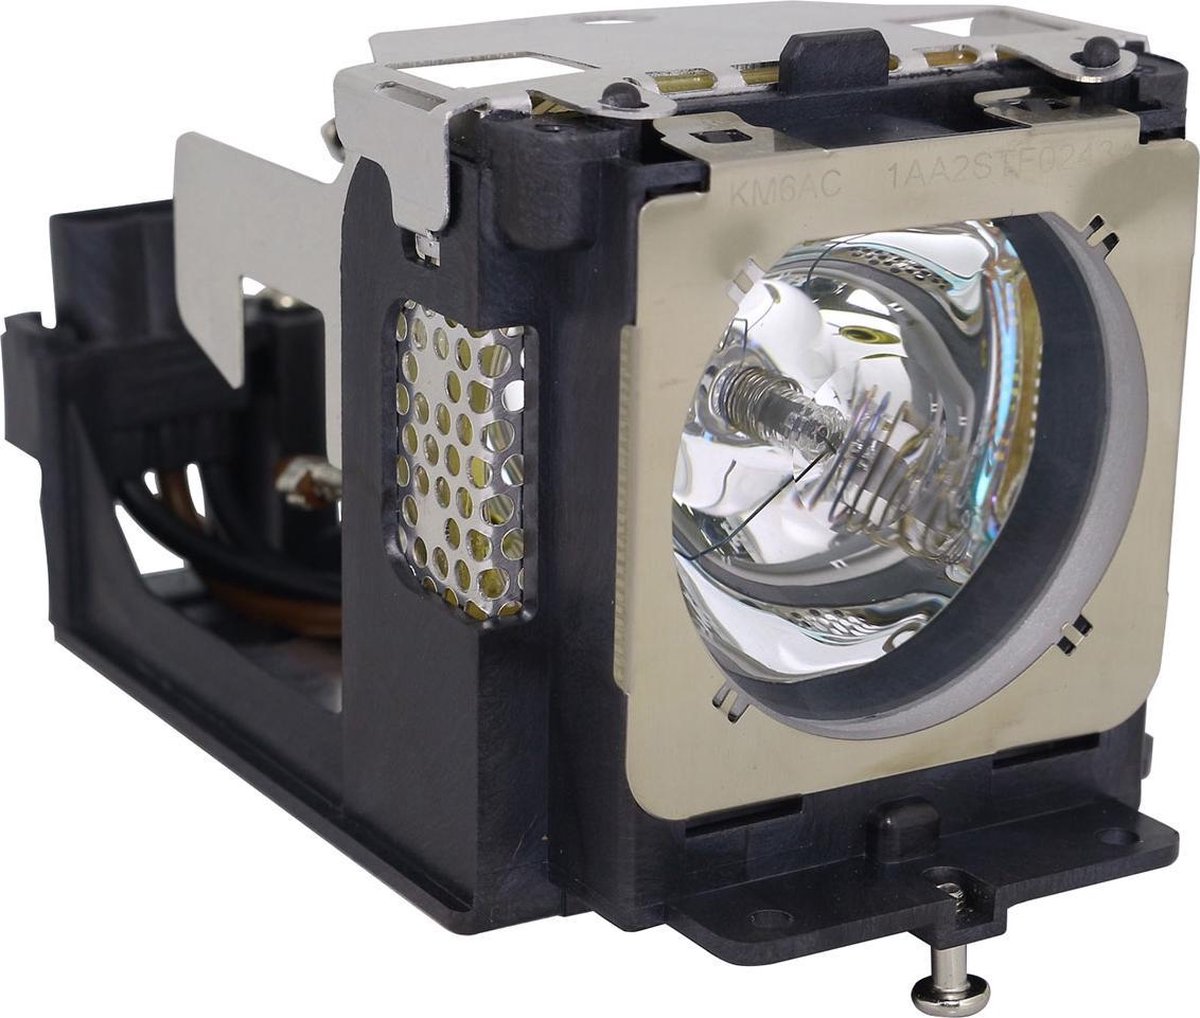 Beamerlamp geschikt voor de EIKI LC-XB42N beamer, lamp code POA-LMP111 / 610-333-9740. Bevat originele NSHA lamp, prestaties gelijk aan origineel.